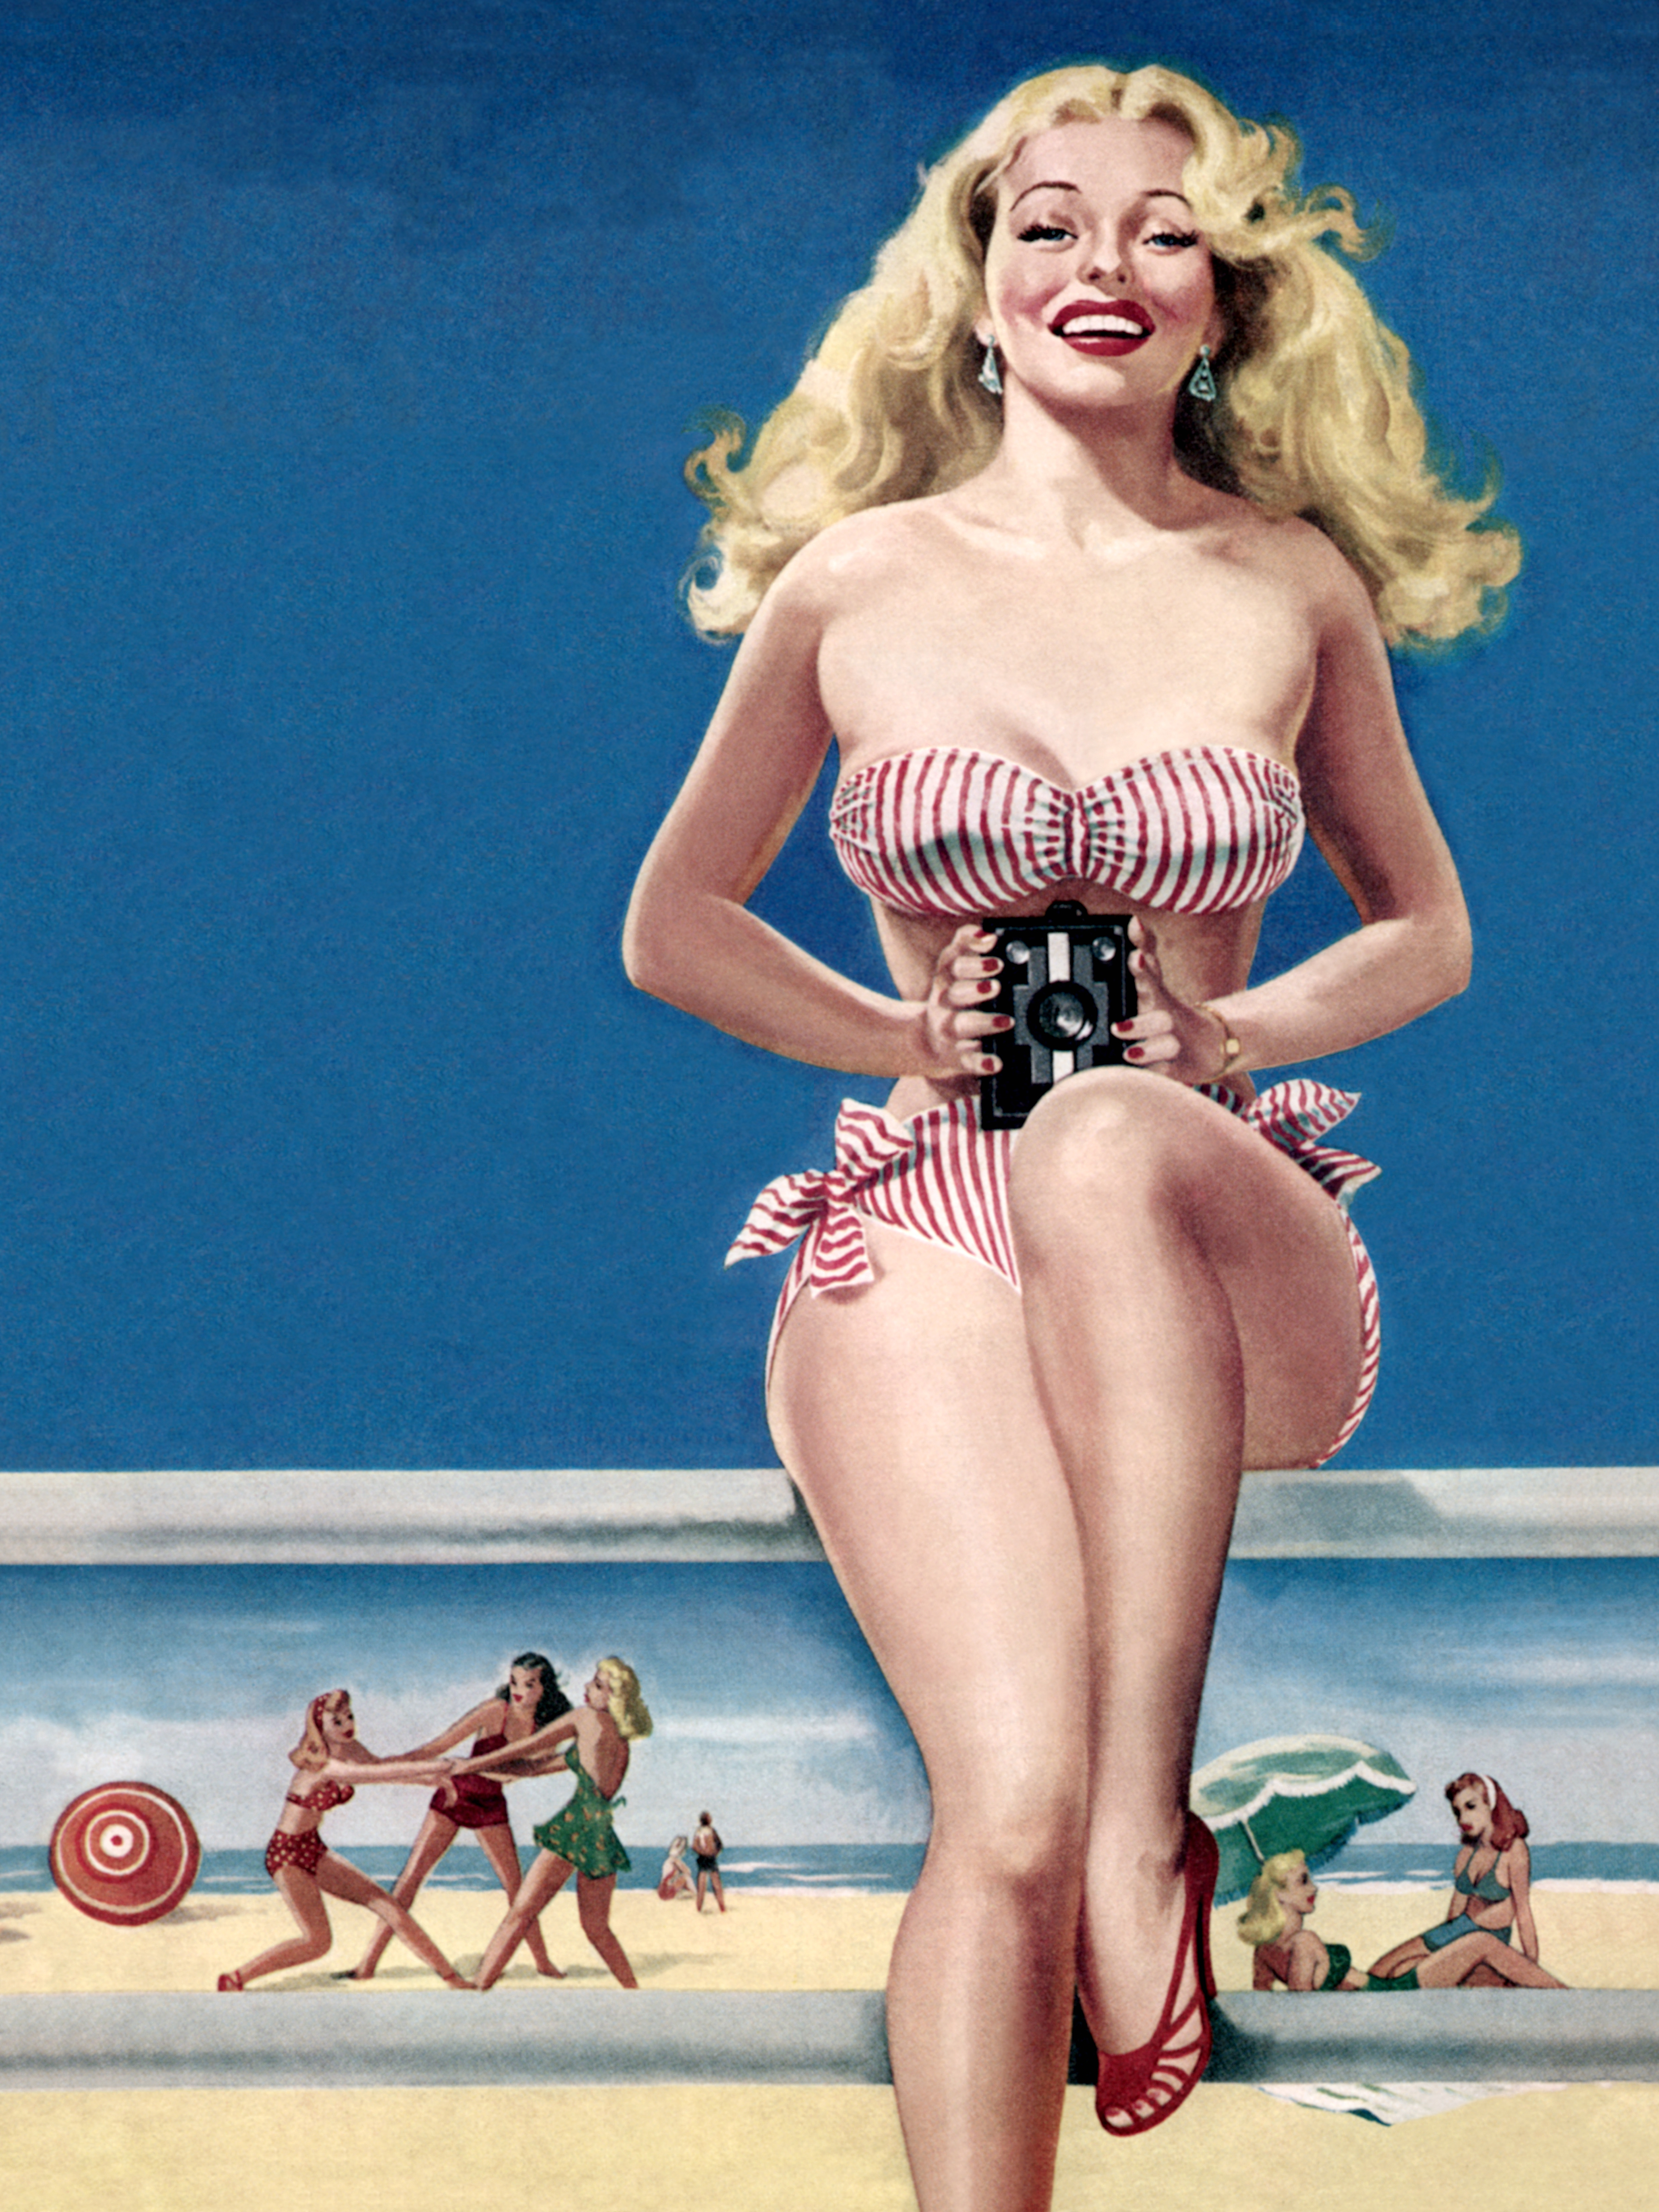 Пин ап сайт pinupcasino10. Питер Дрибен. Постеры 50-х годов. Пин ап девушки. Постеры в стиле 60-х годов Америка.